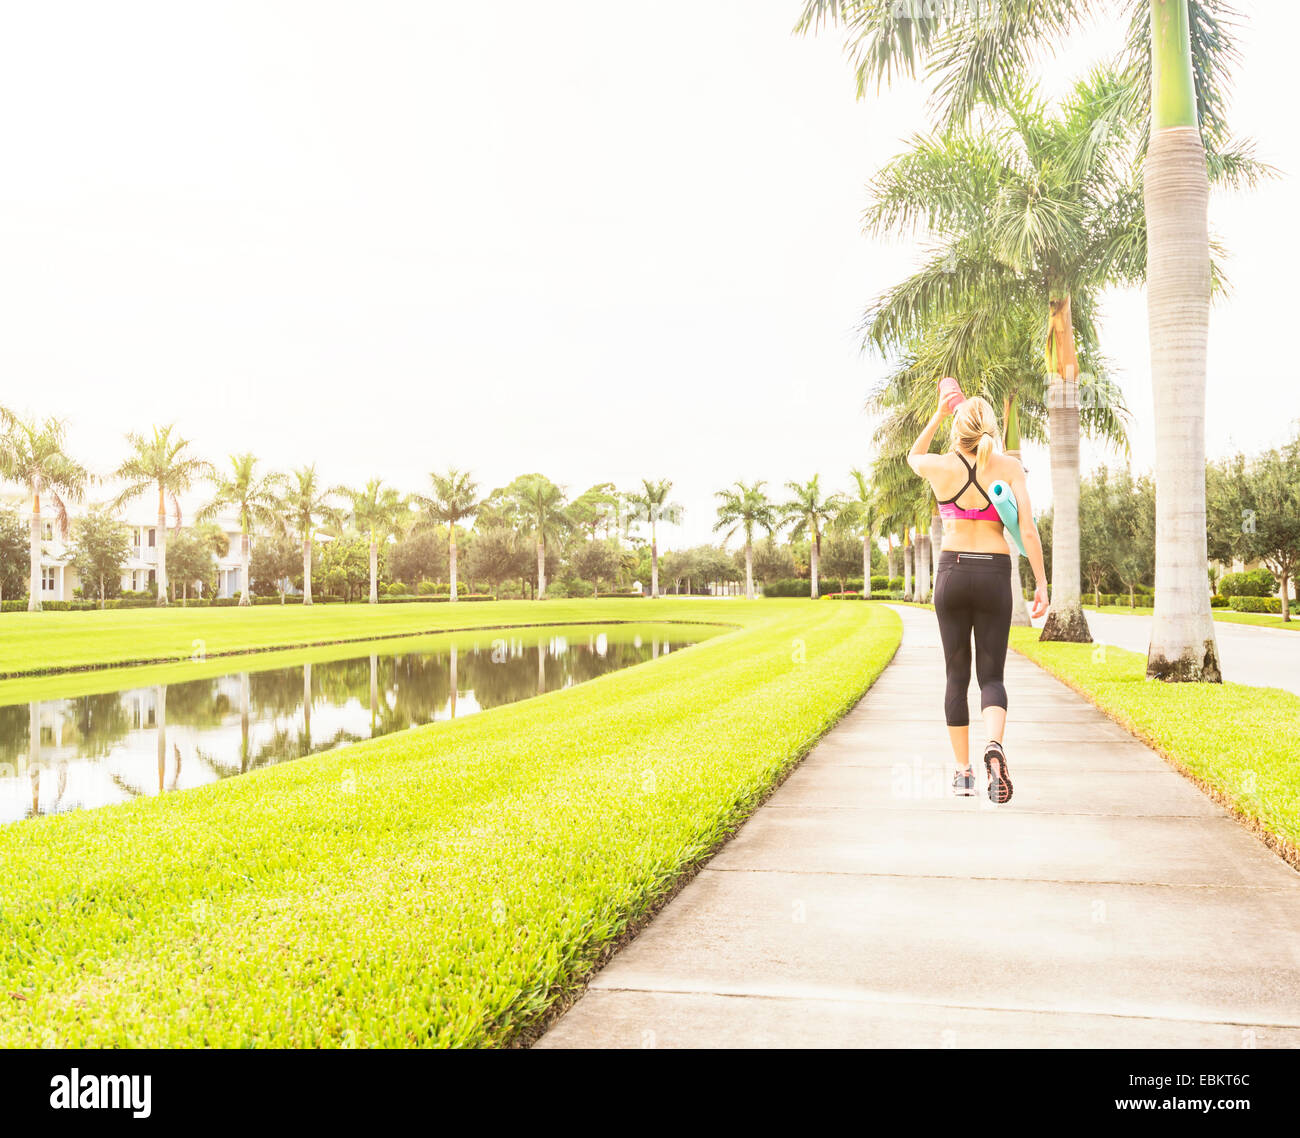 USA, Floride, Jupiter, femme à marcher le long de l'eau potable promenade Banque D'Images